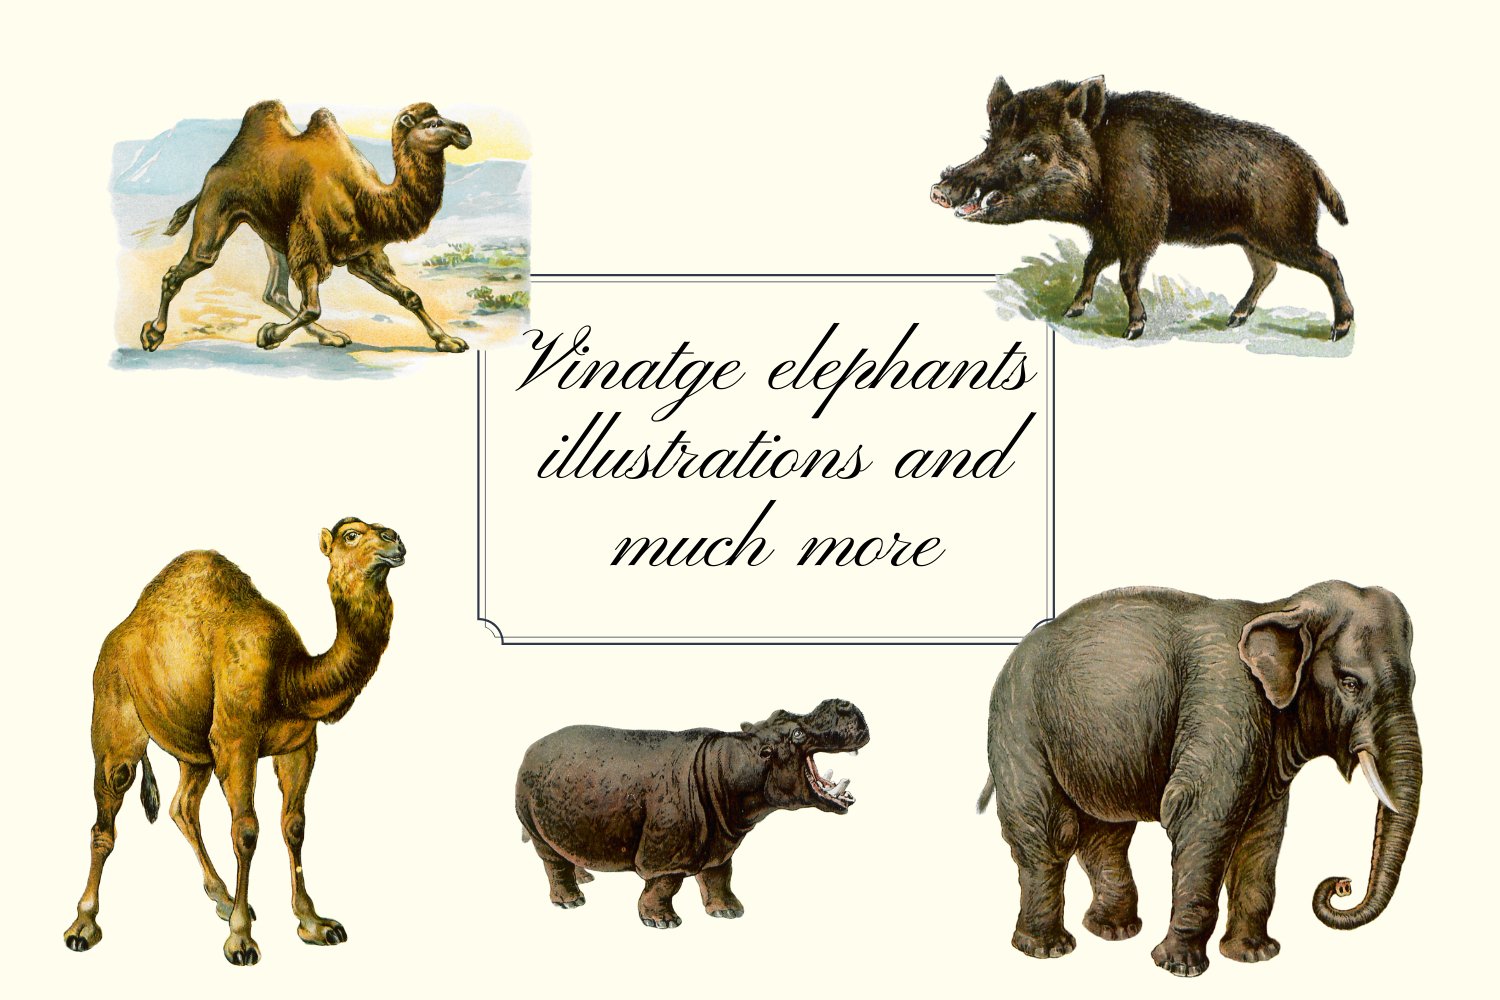 Vintage elephants illustrations.